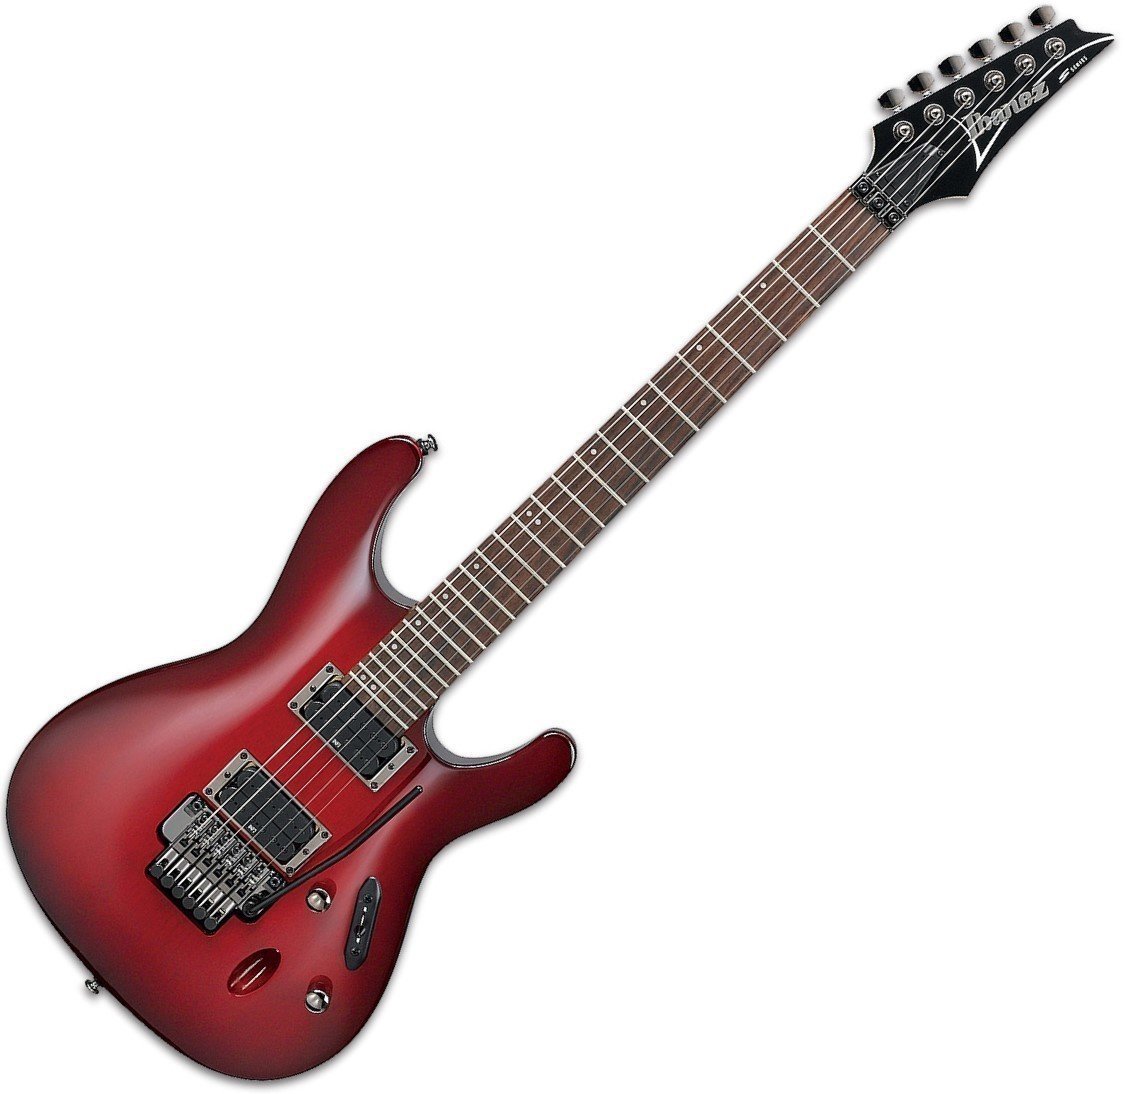 E-Gitarre Ibanez S520 Blackberry Sunburst